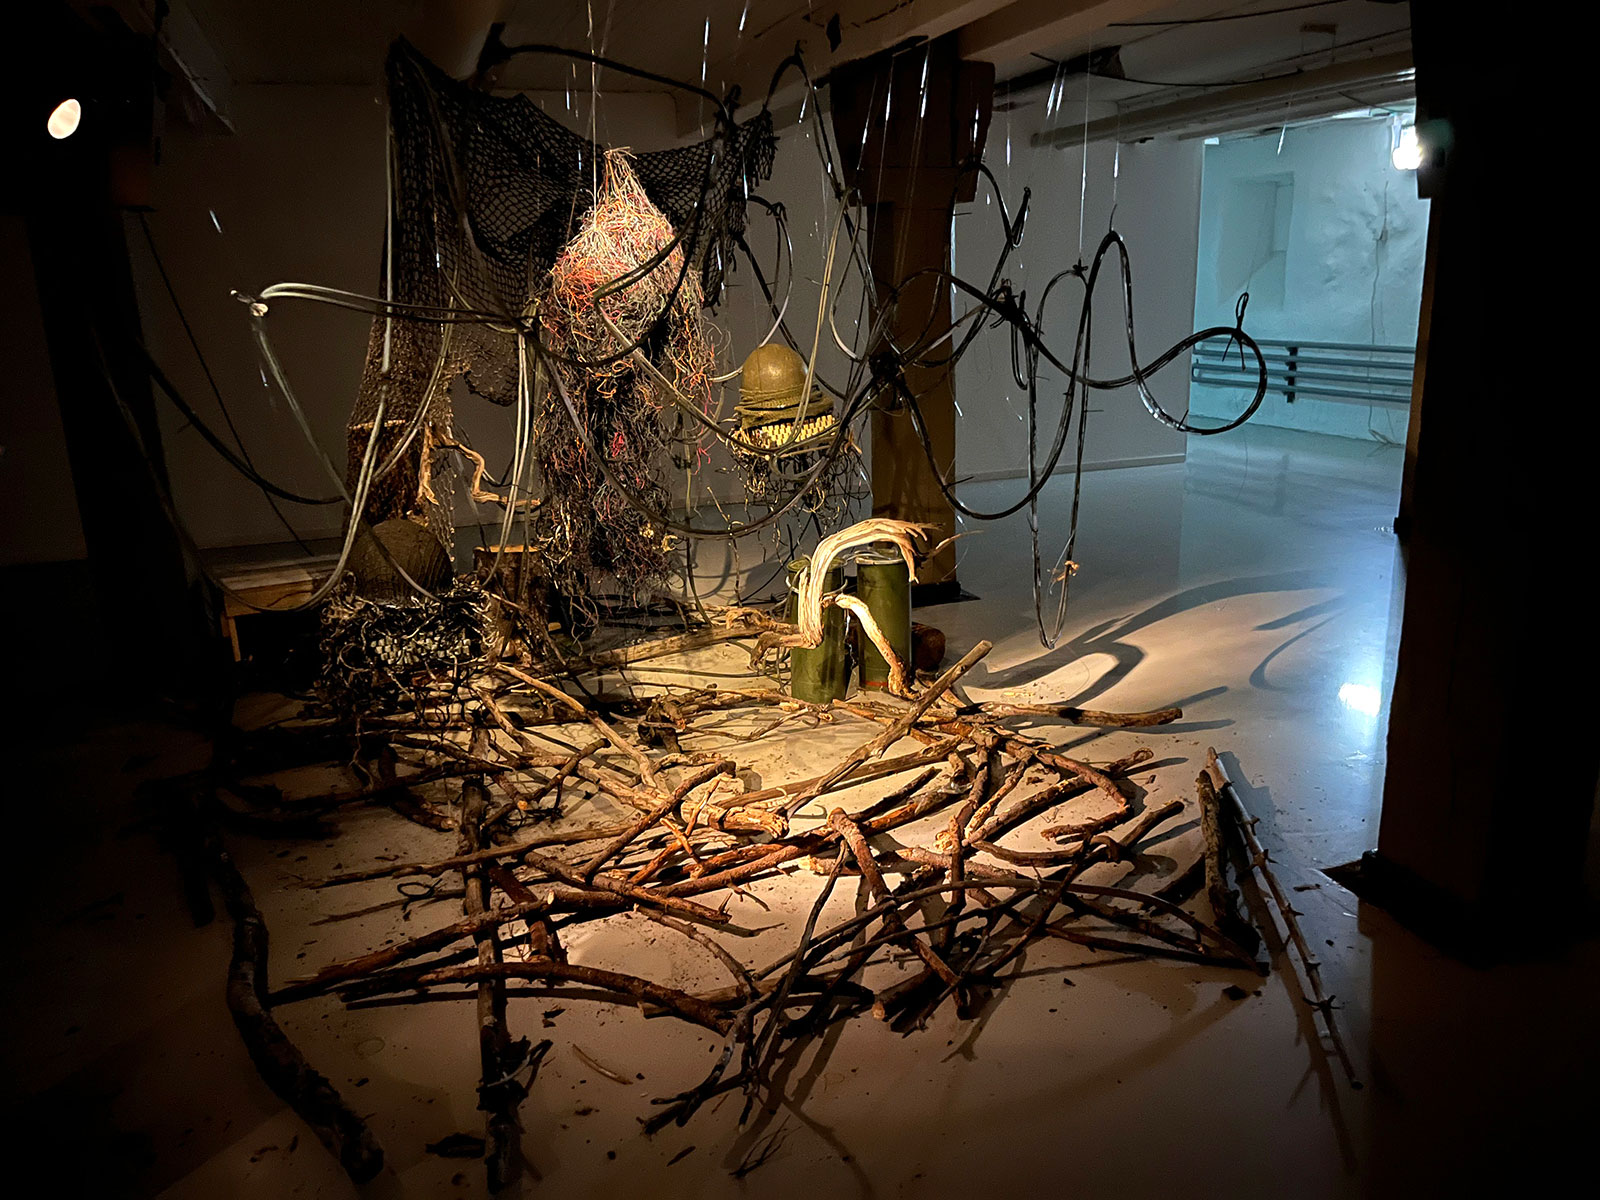 Foto av installation. I mitten av ett rum, delvis dunkelt upplyst, ses en stor trasslig hopsättning av föremål såsom trädgrenar, gamla elkablar, skrivmaskiner och militärhjälmar. 